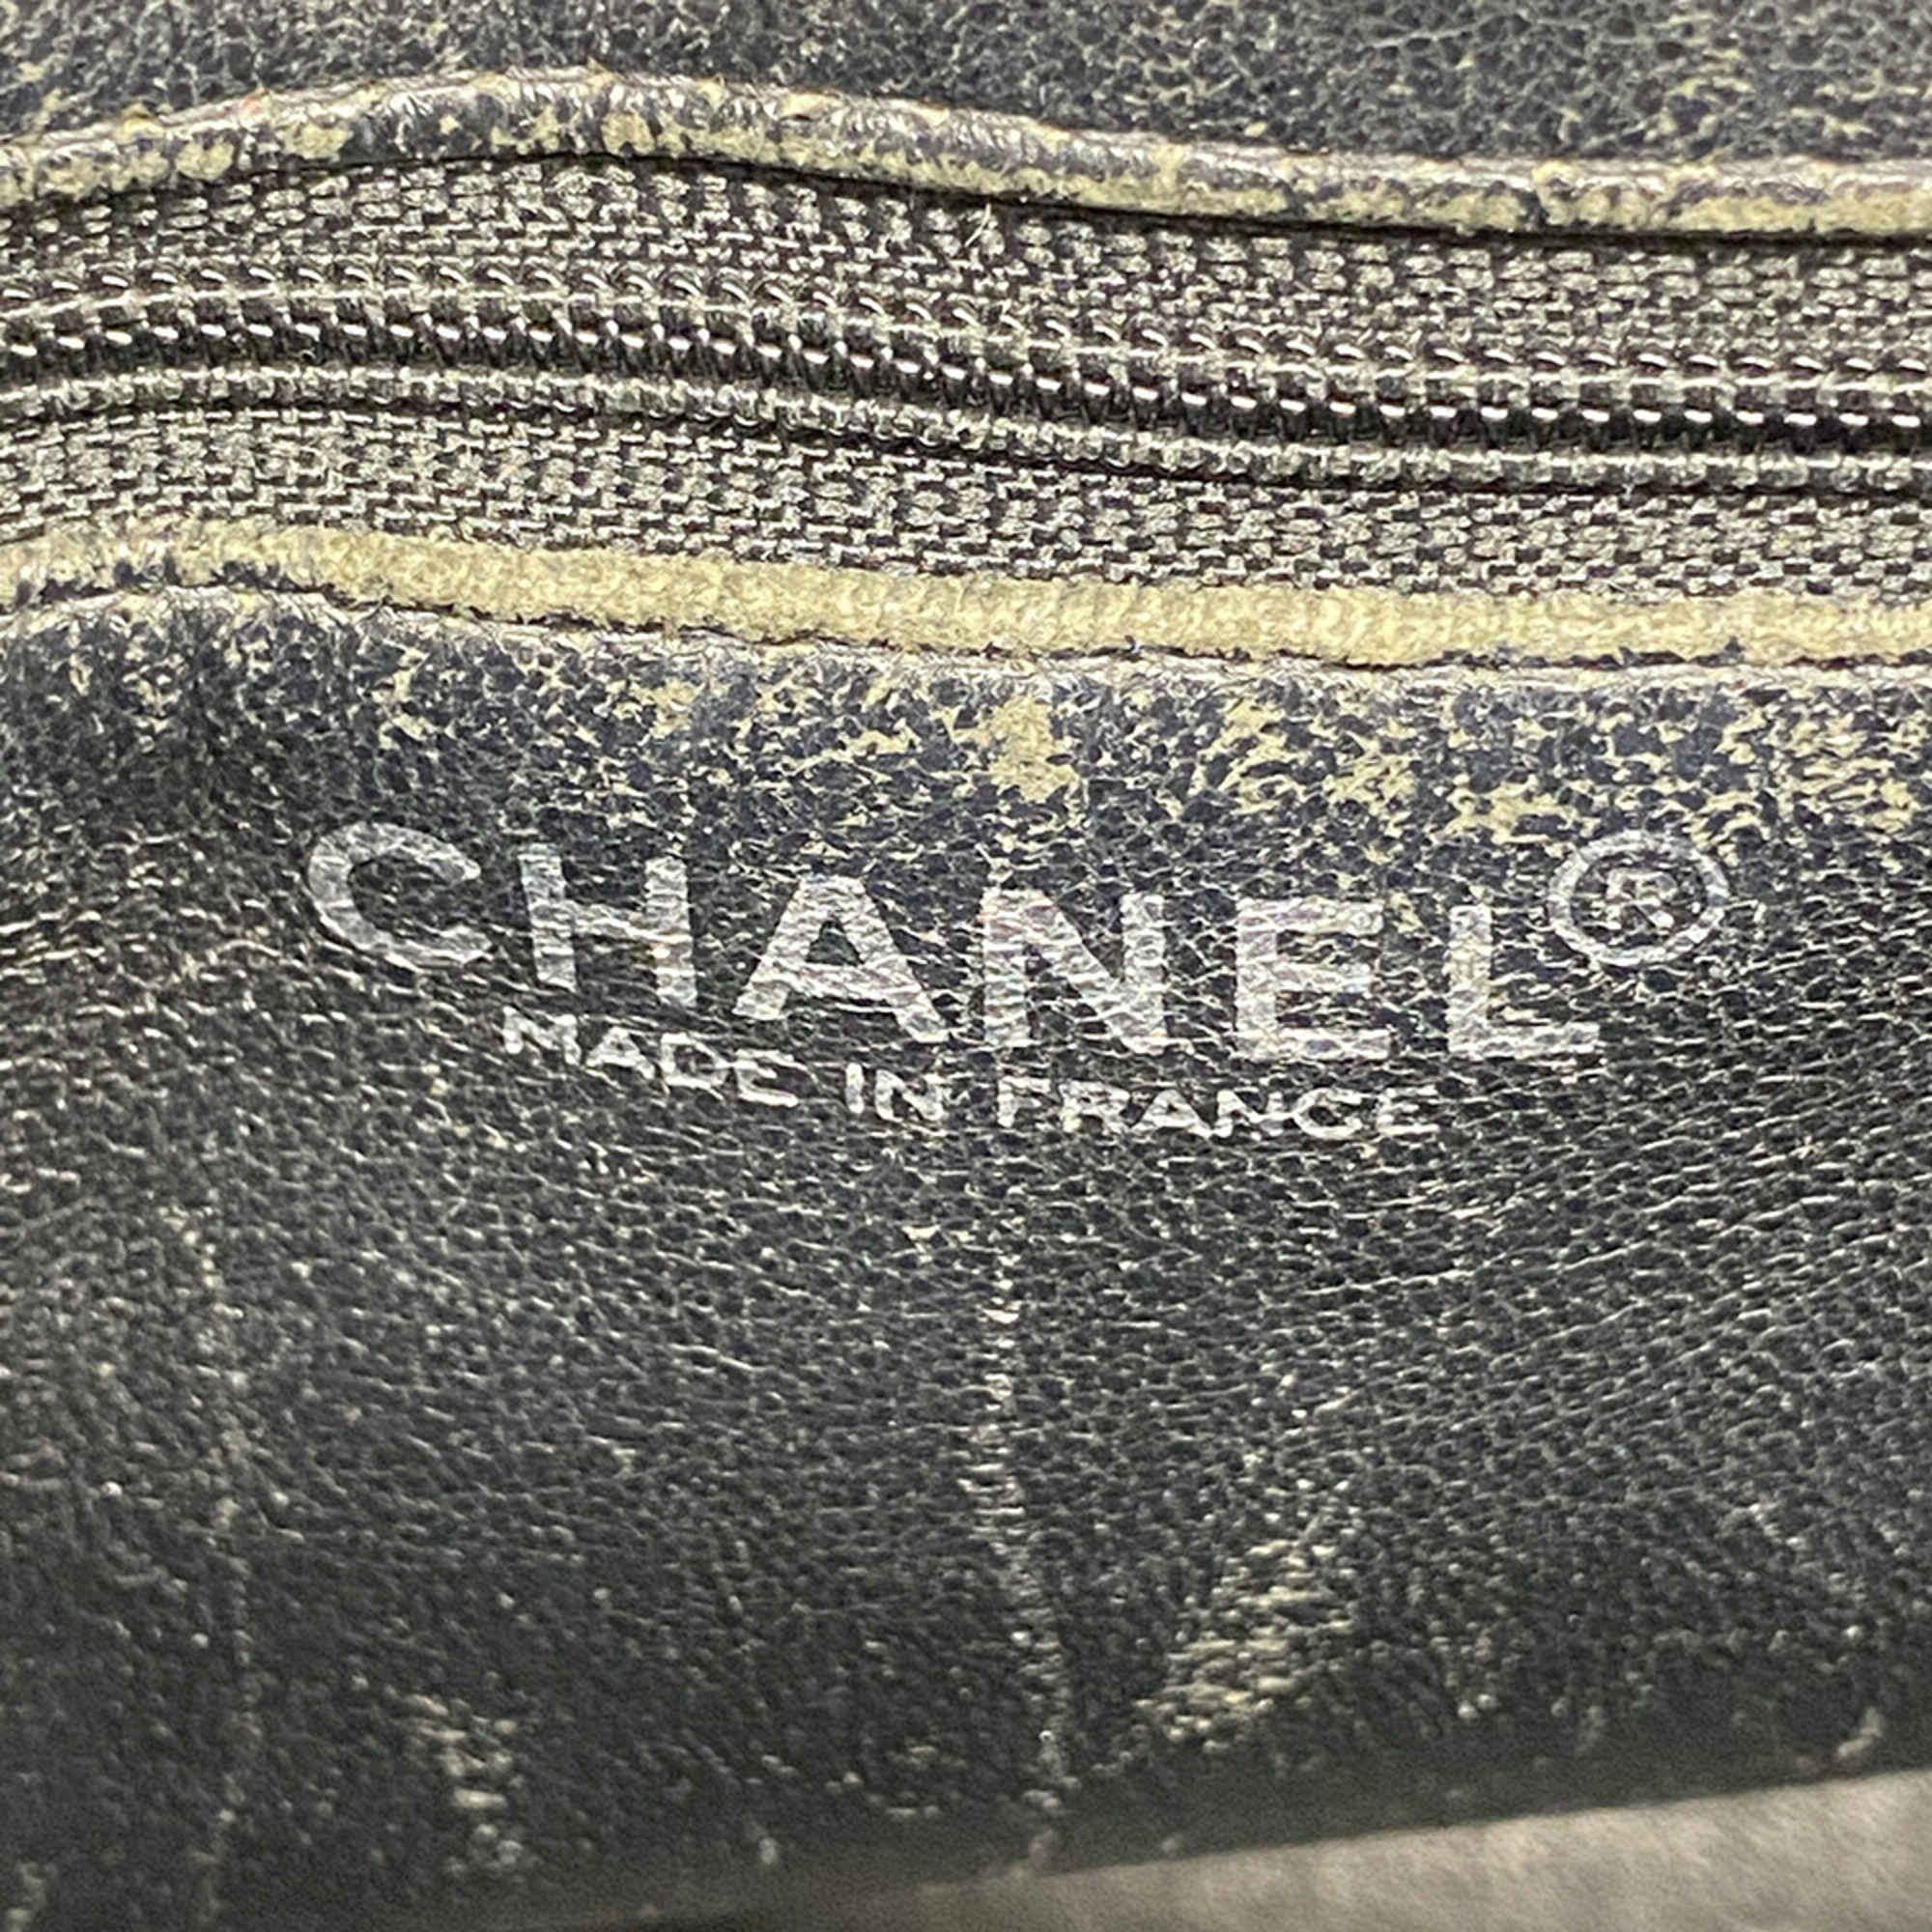 シャネル(Chanel) シャネル トートバッグ 復刻トート キャビアスキン ブラック  レディース